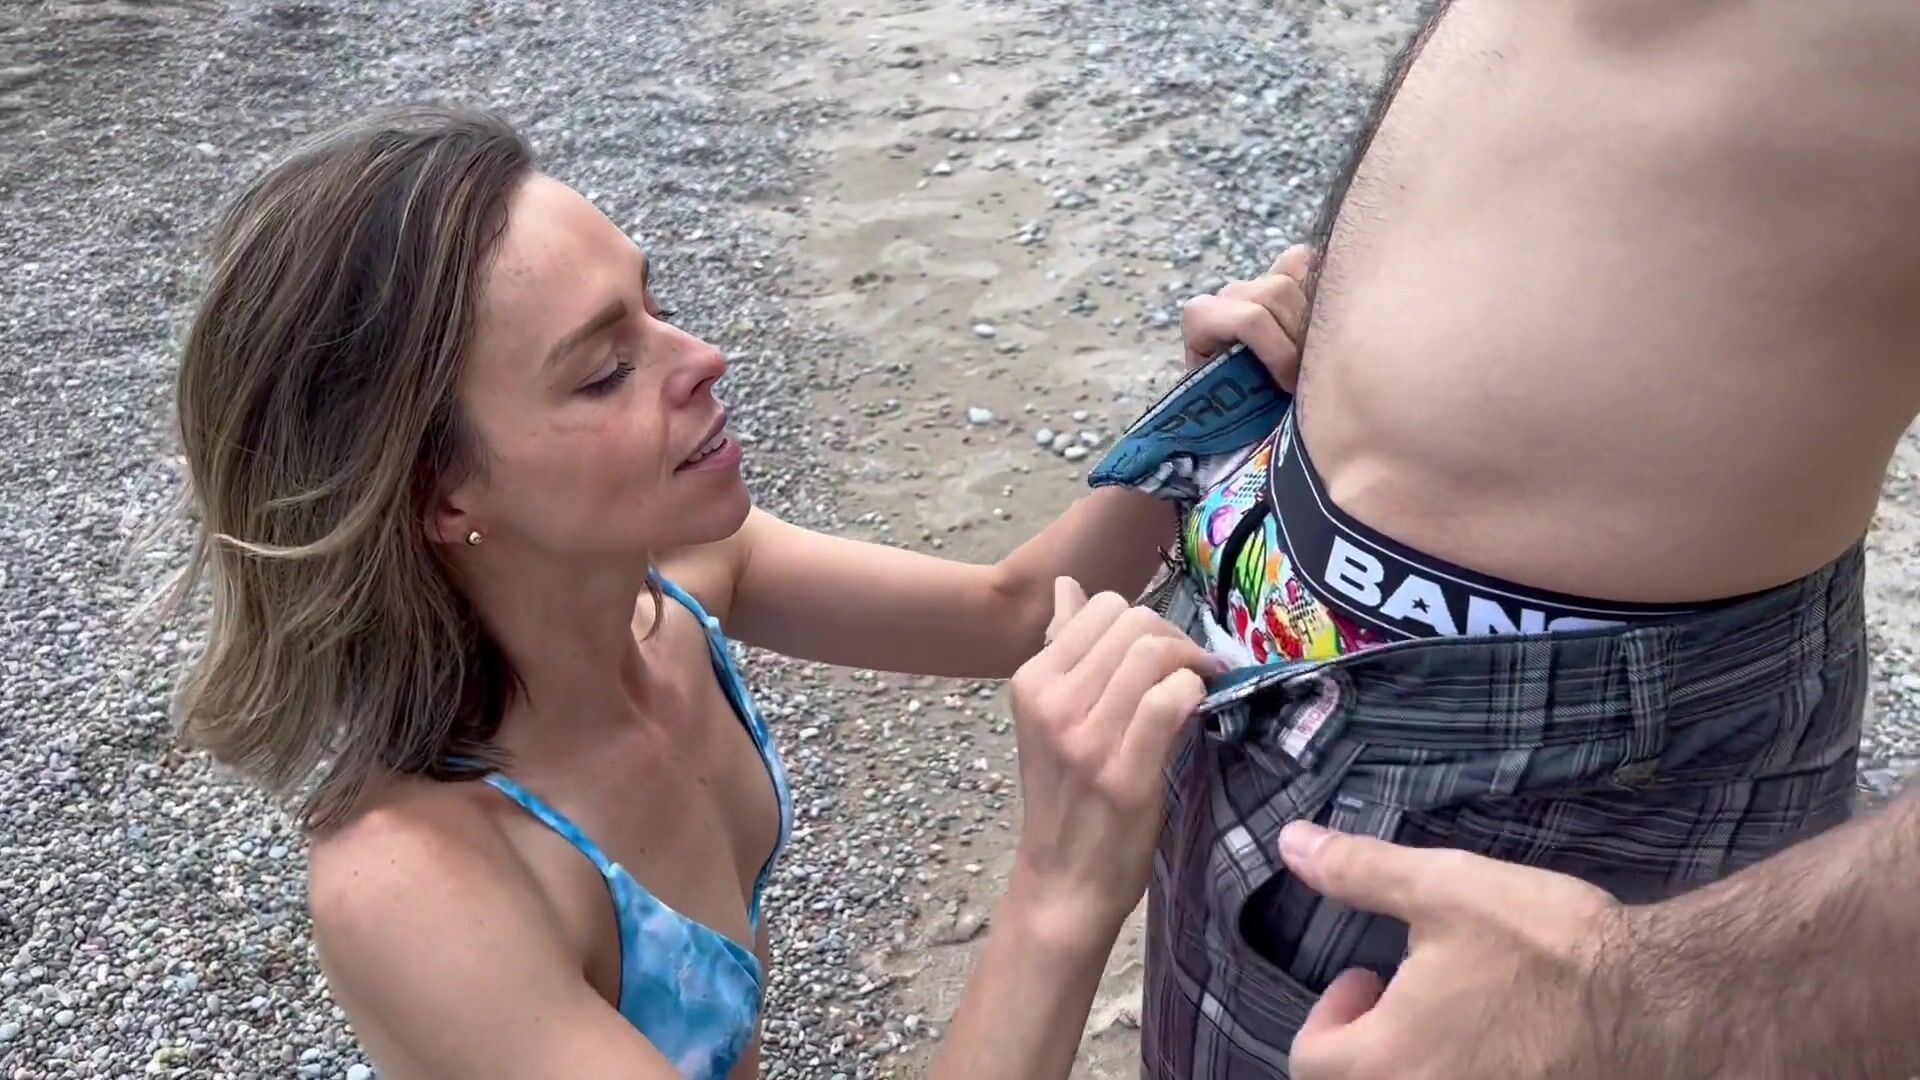 Une femme baise deux bites sur une plage publique en bikini / Crêpages de chignons et soins du visage non protégés / Amateur hotwife regarder en ligne image